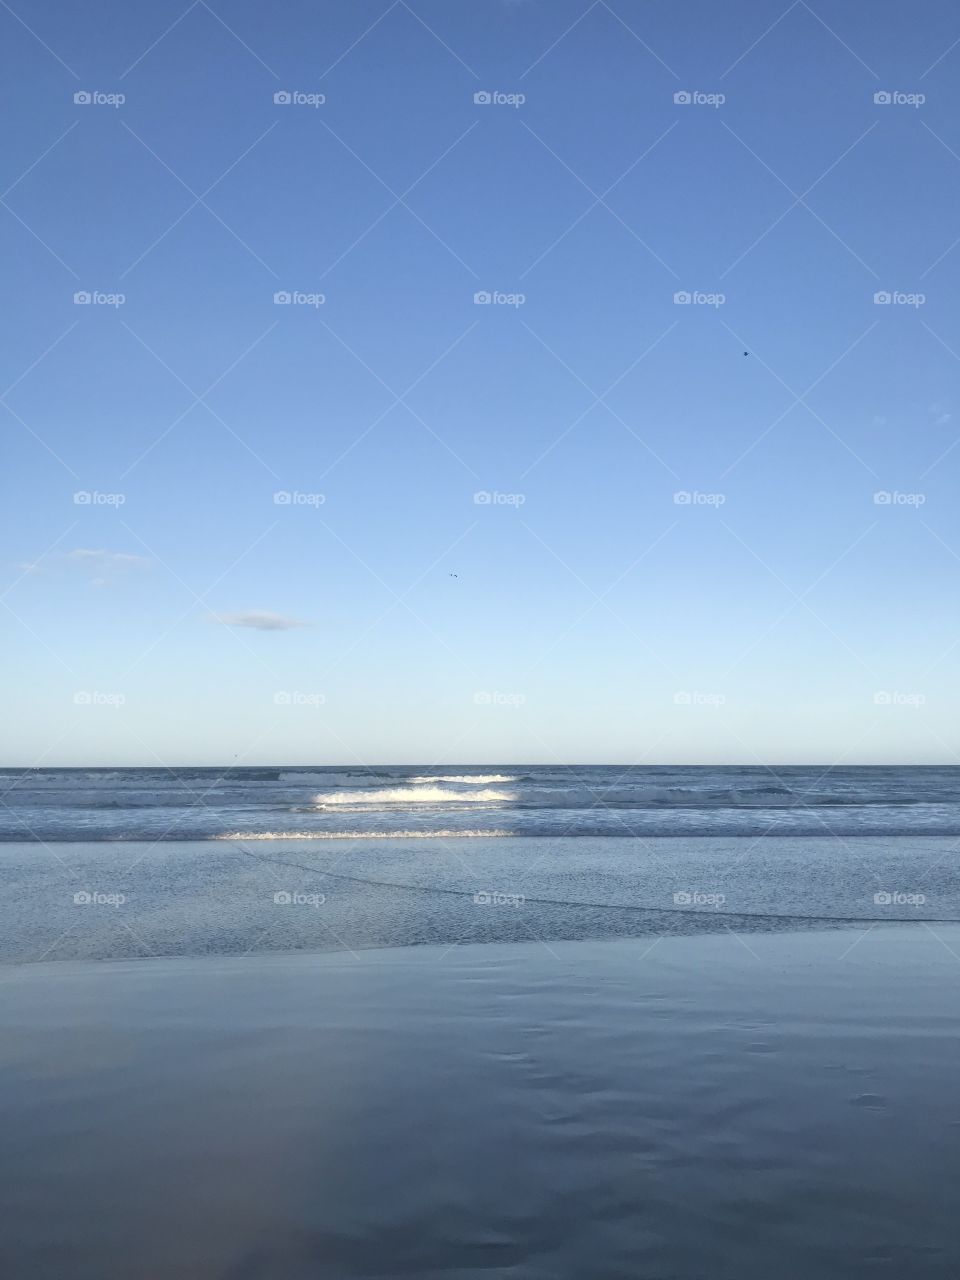 Water, No Person, Sea, Landscape, Beach